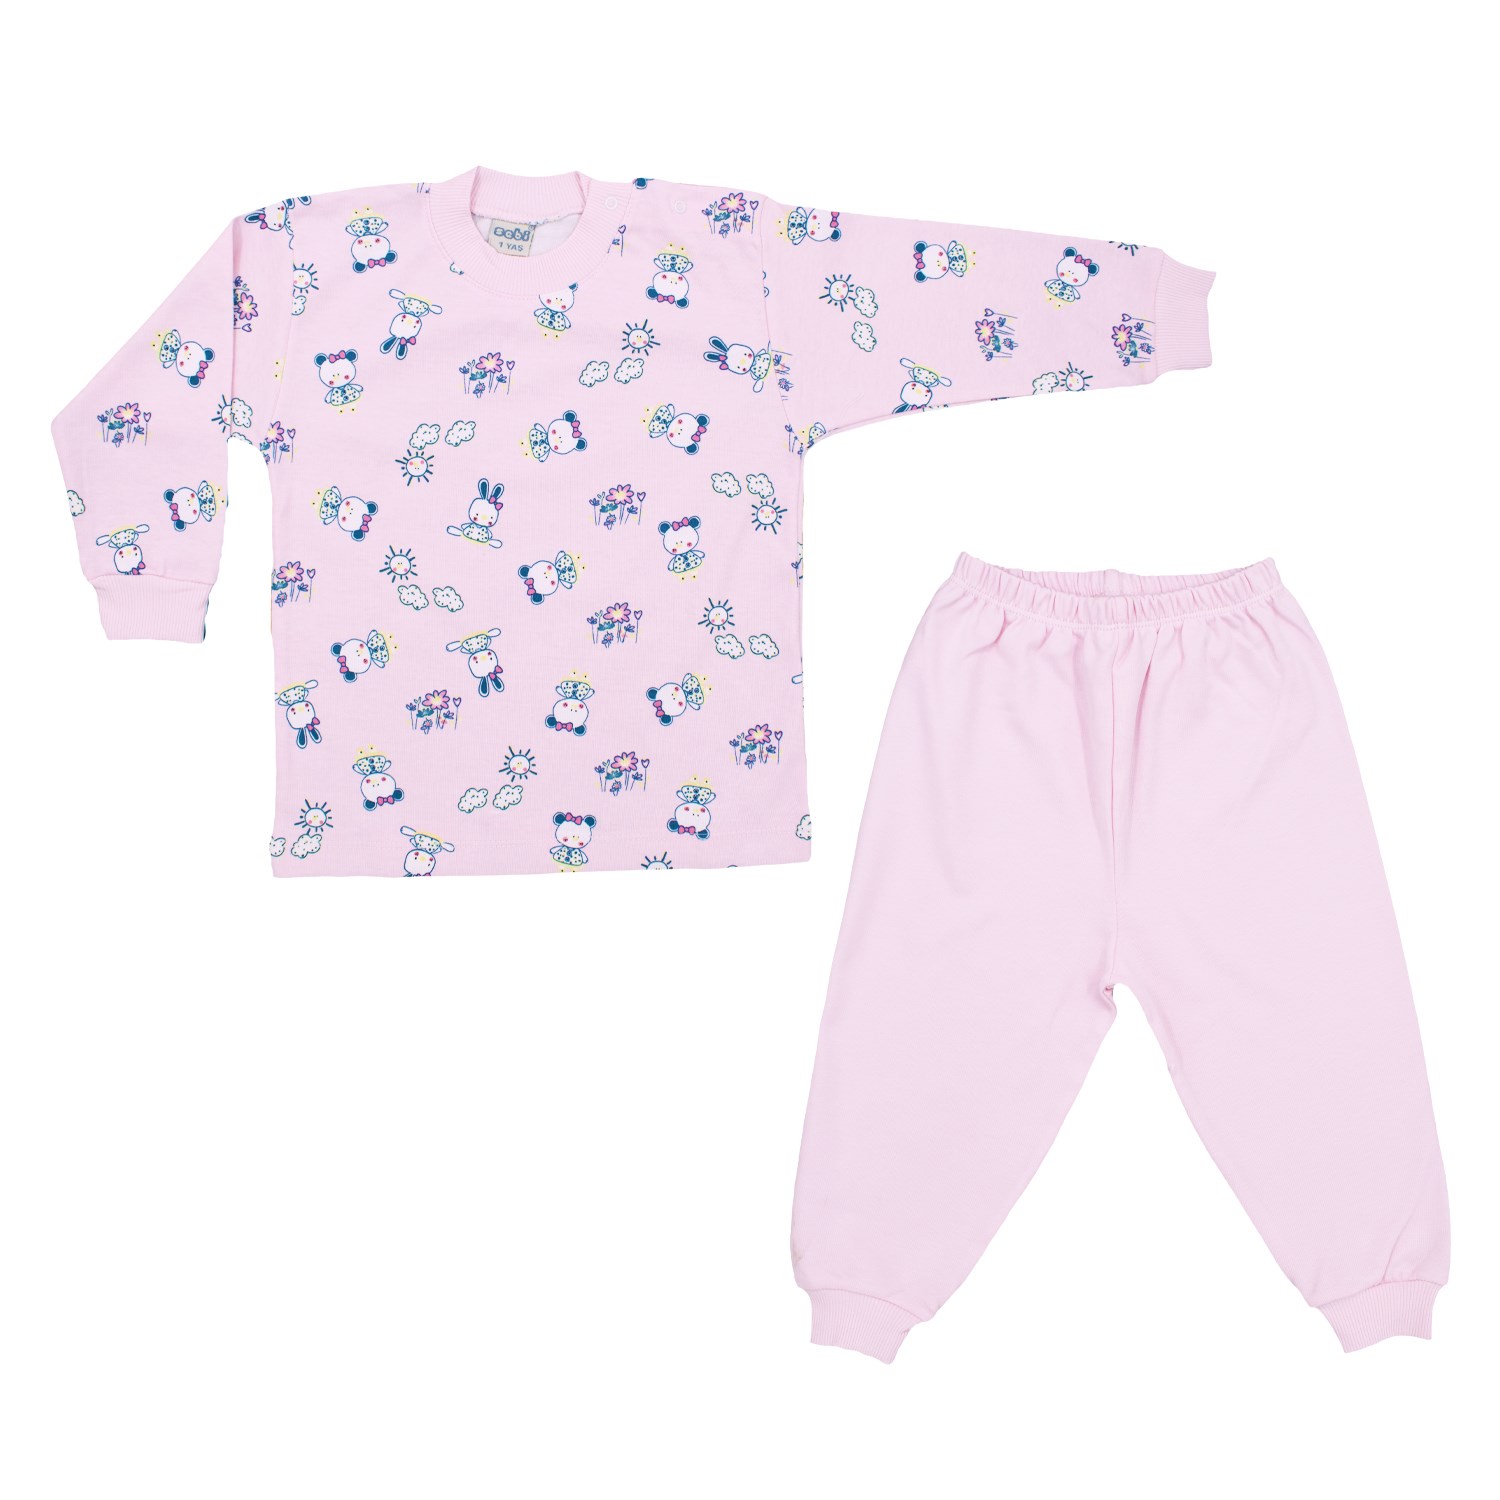 Sebi Bebe Ayılı Kız Bebek Pijama Takımı 2418 Pembe